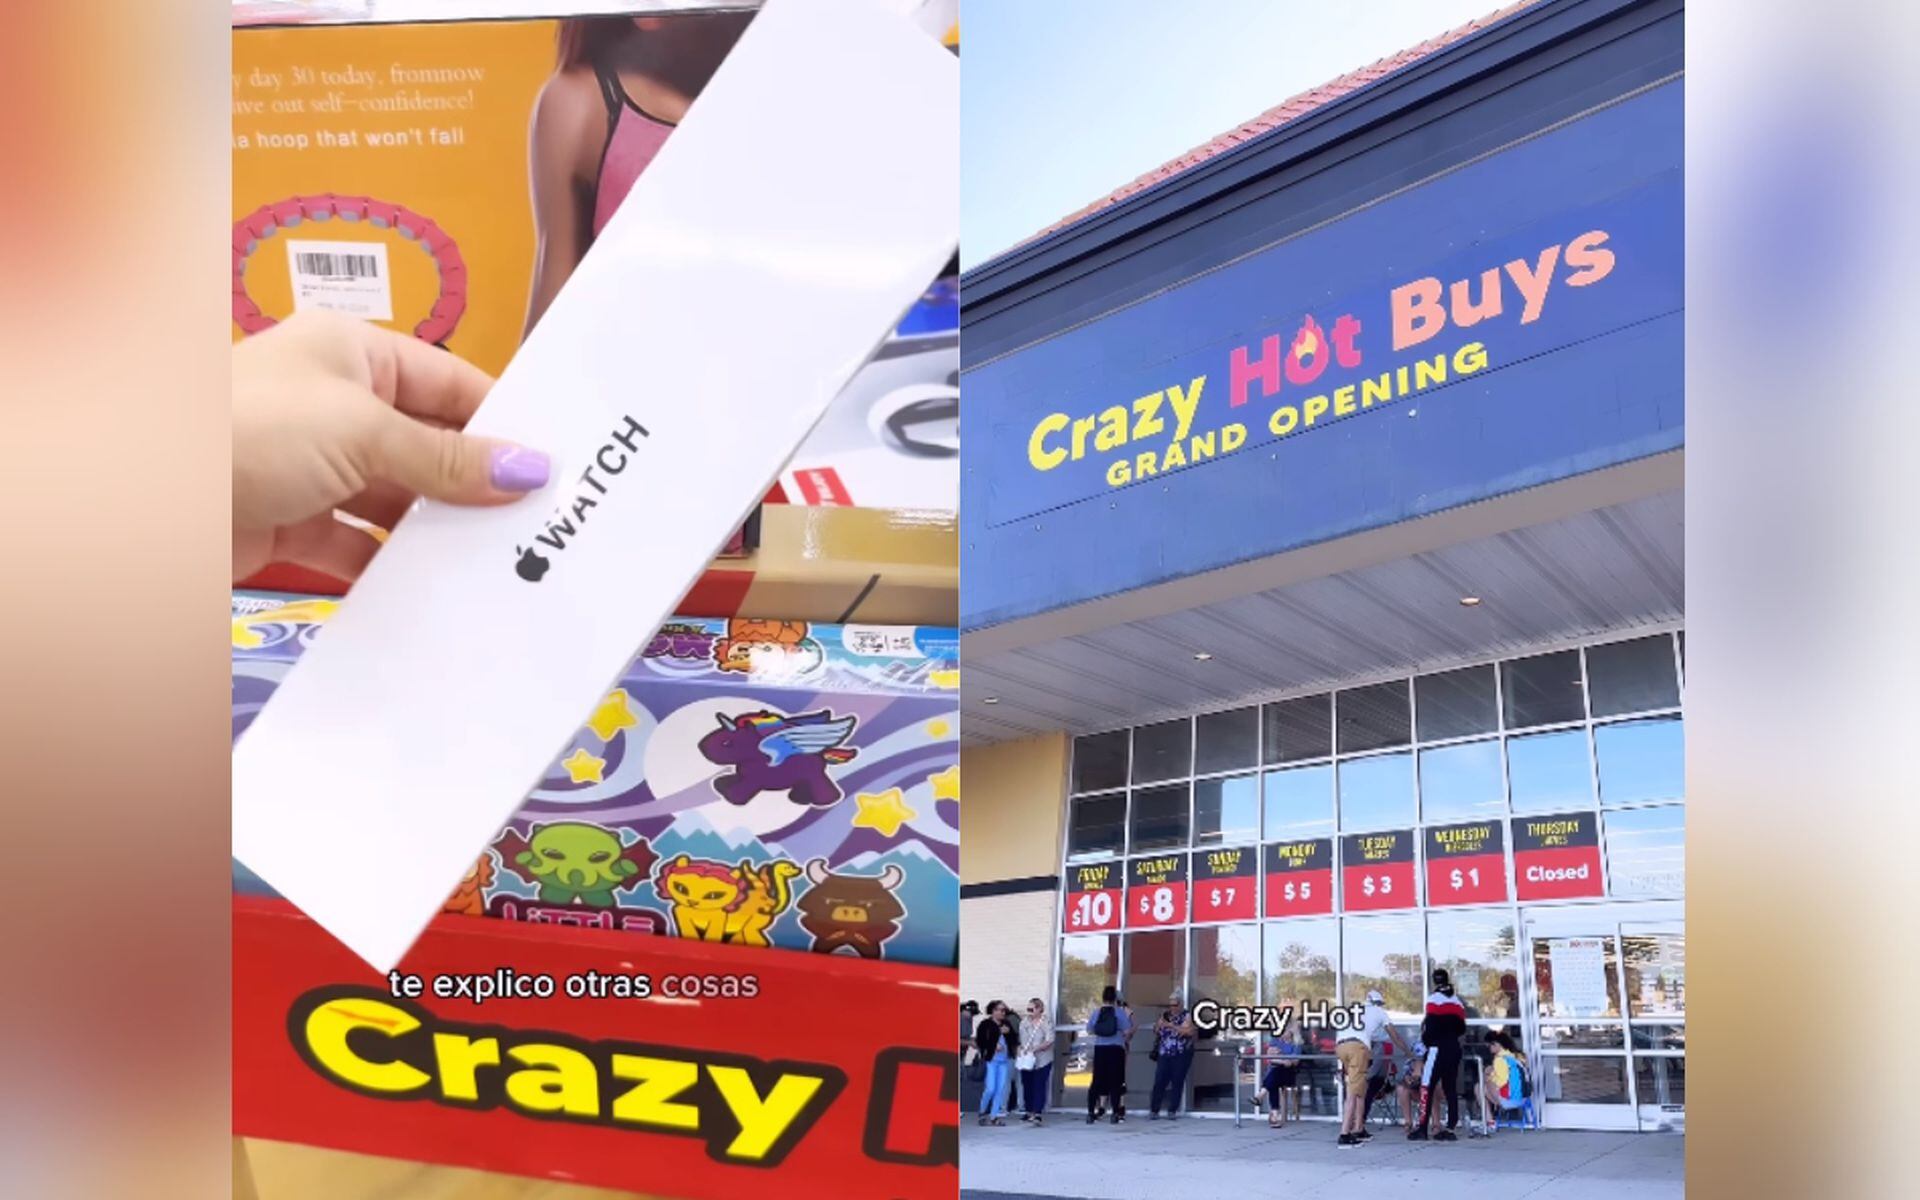 CRAZY HOT BUYS!! Una tienda que se ha ido viral por sus precios